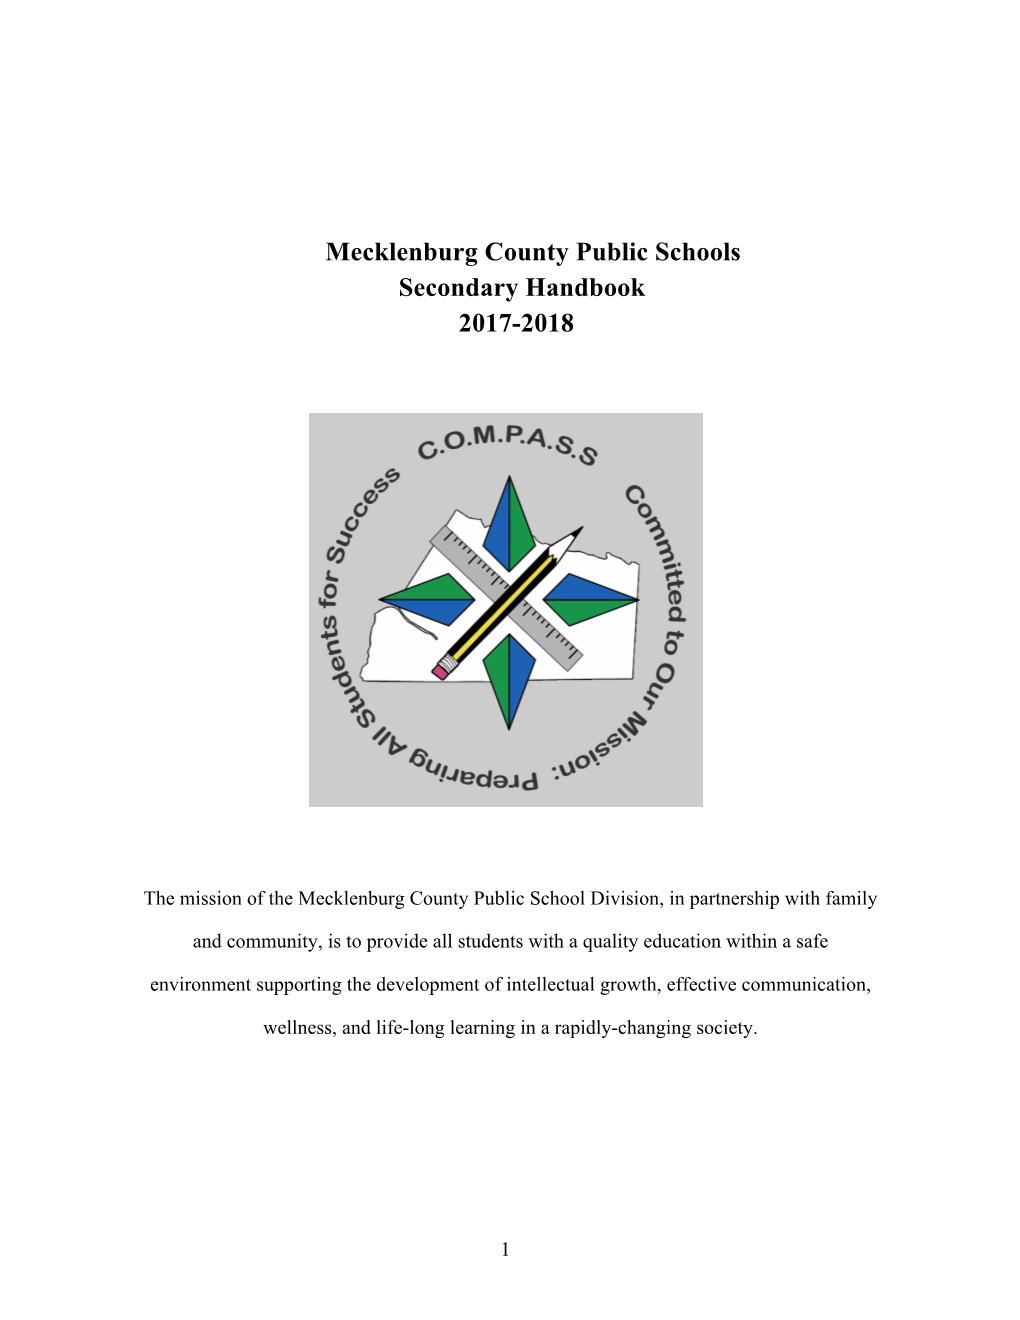 Mecklenburg County Public Schools Secondary Handbook 2017-2018